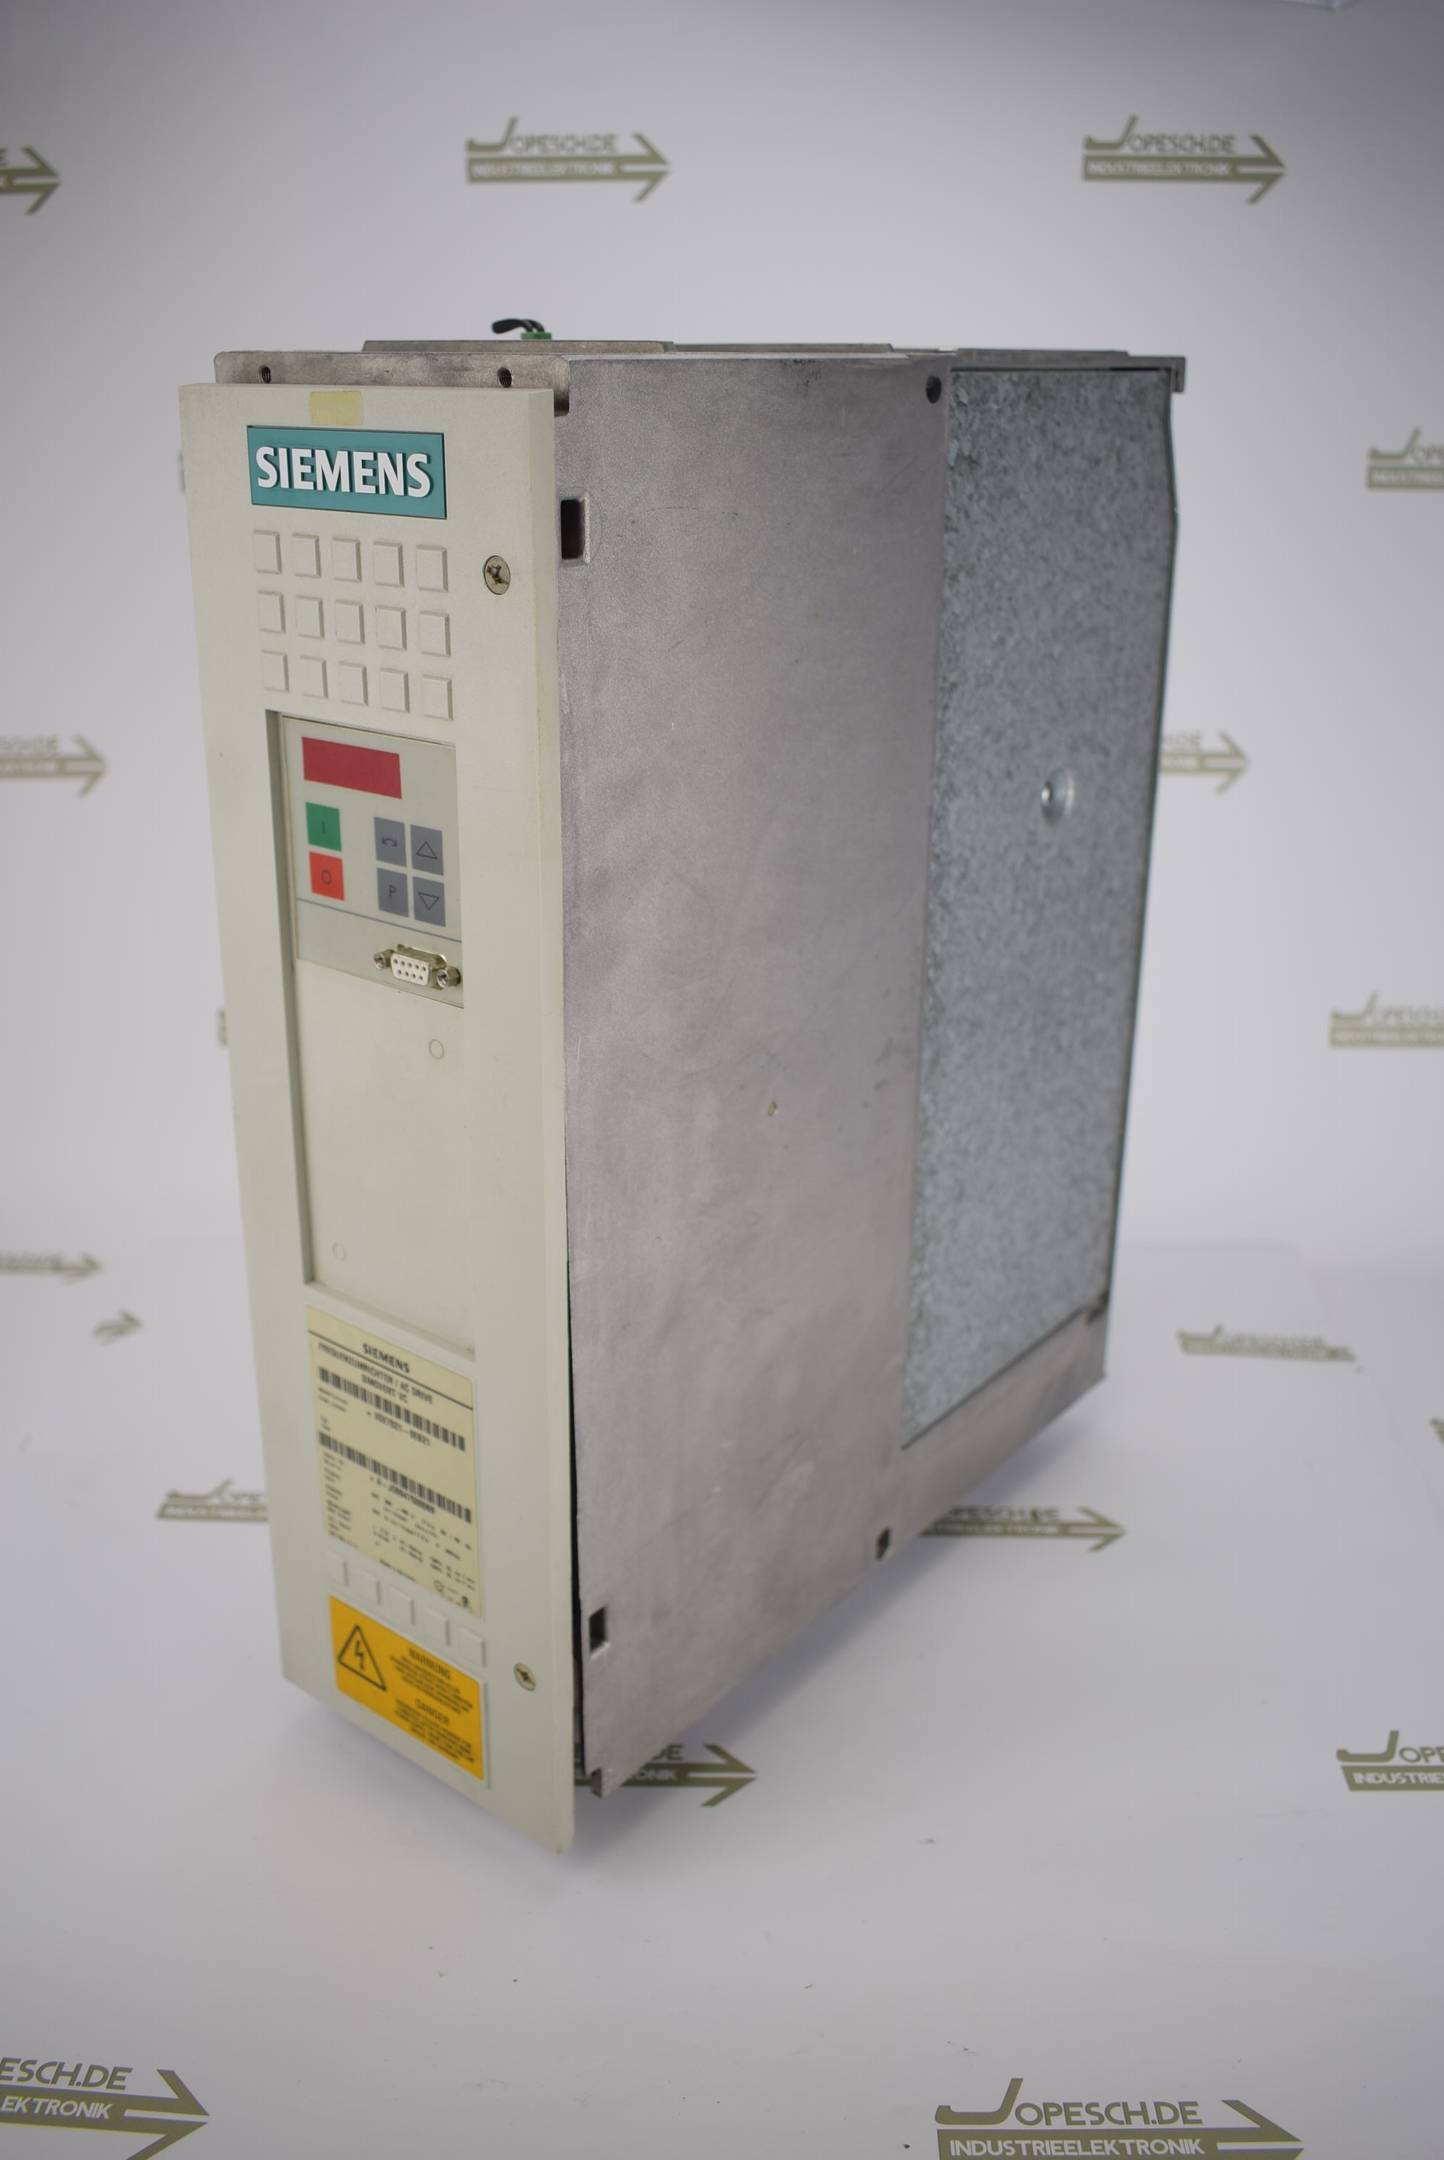 Siemens simovert VC Frequenzumrichter 6SE7021-8EB21 Ver. A